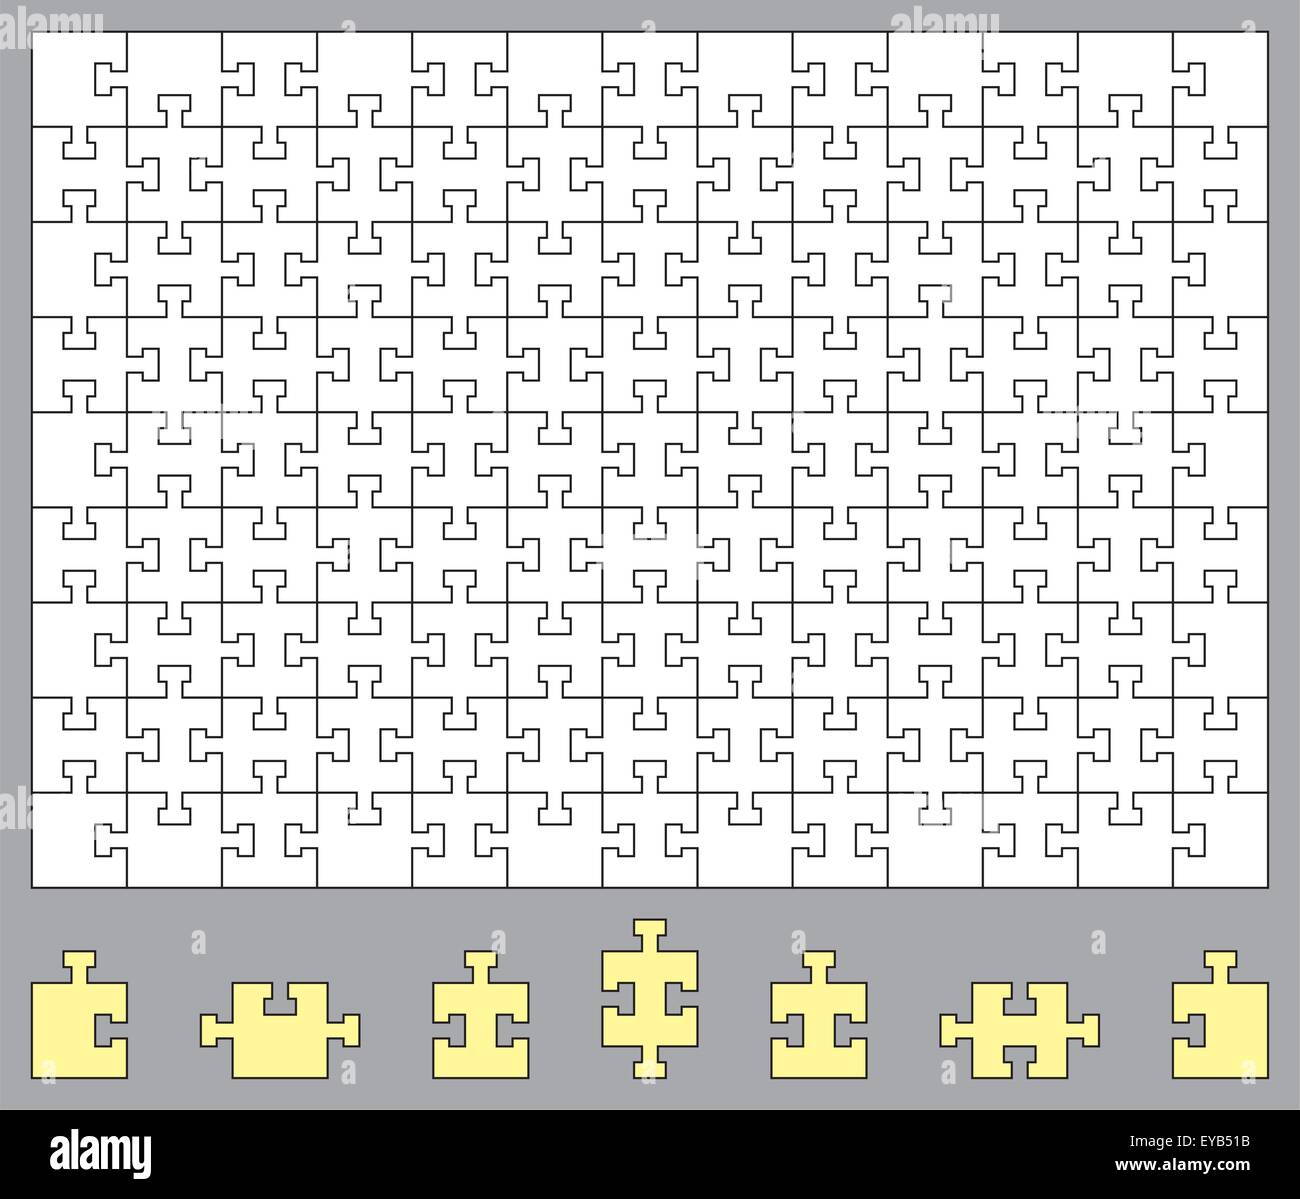 Benutzerdefinierte Jigsaw puzzle mit 117 Stücke oder machen Sie eigene  matrix Stock-Vektorgrafik - Alamy